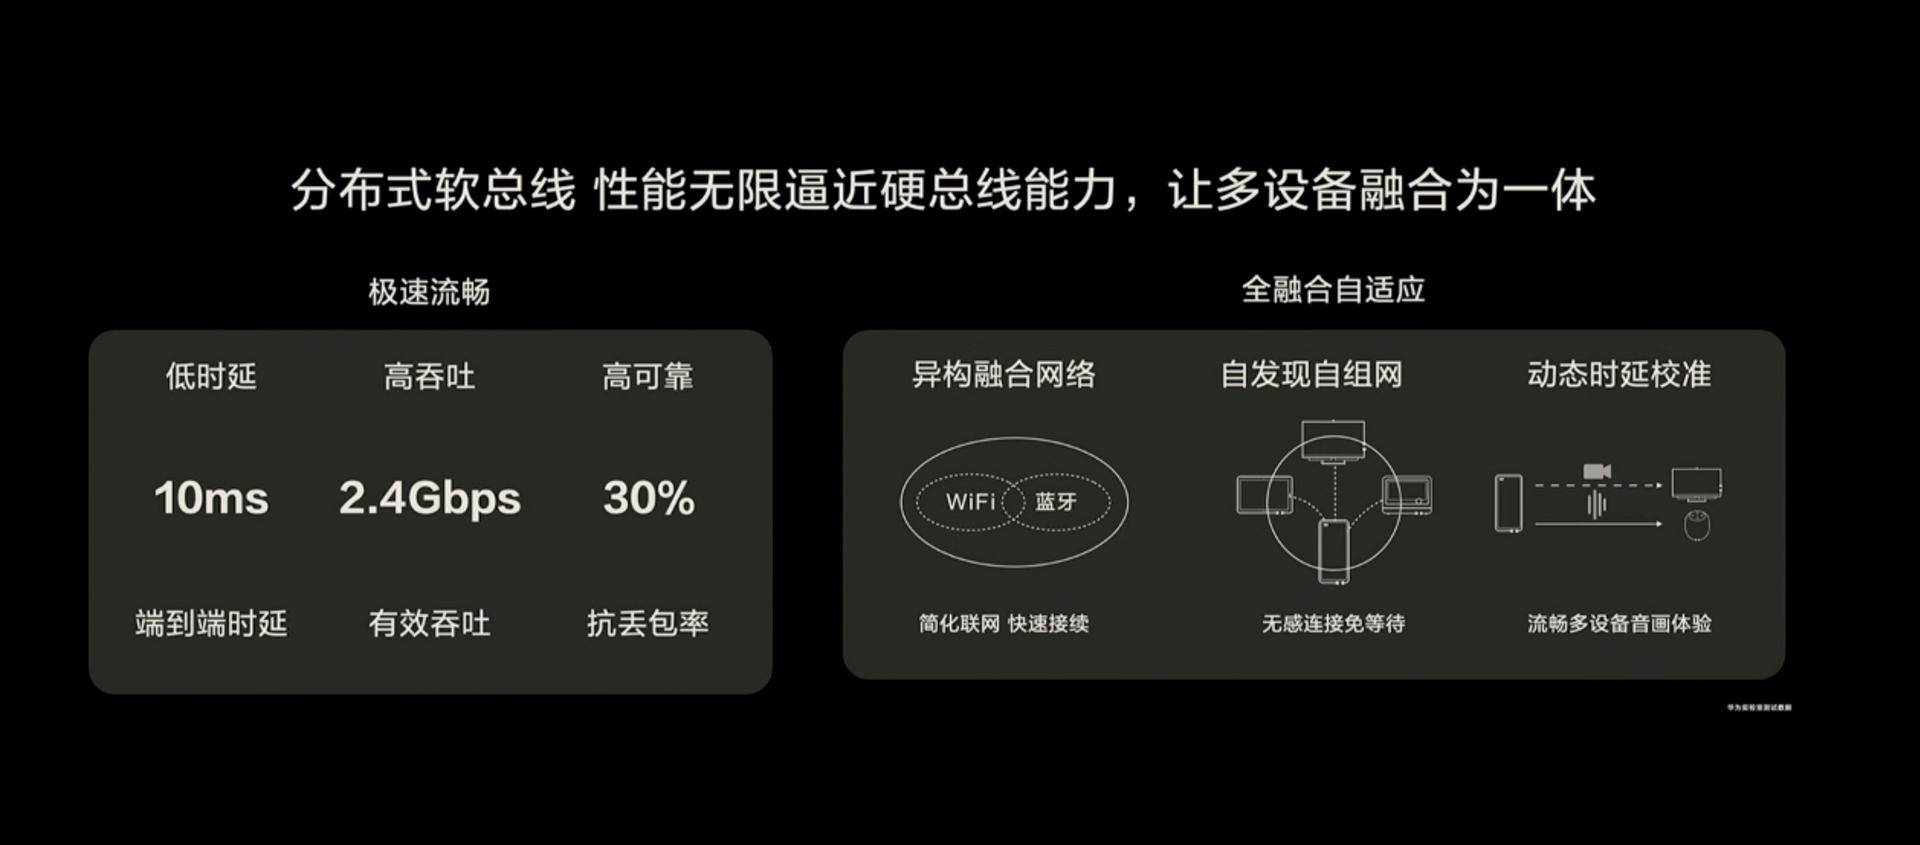 7 3 - Cos’è Huawei Hongmeng?